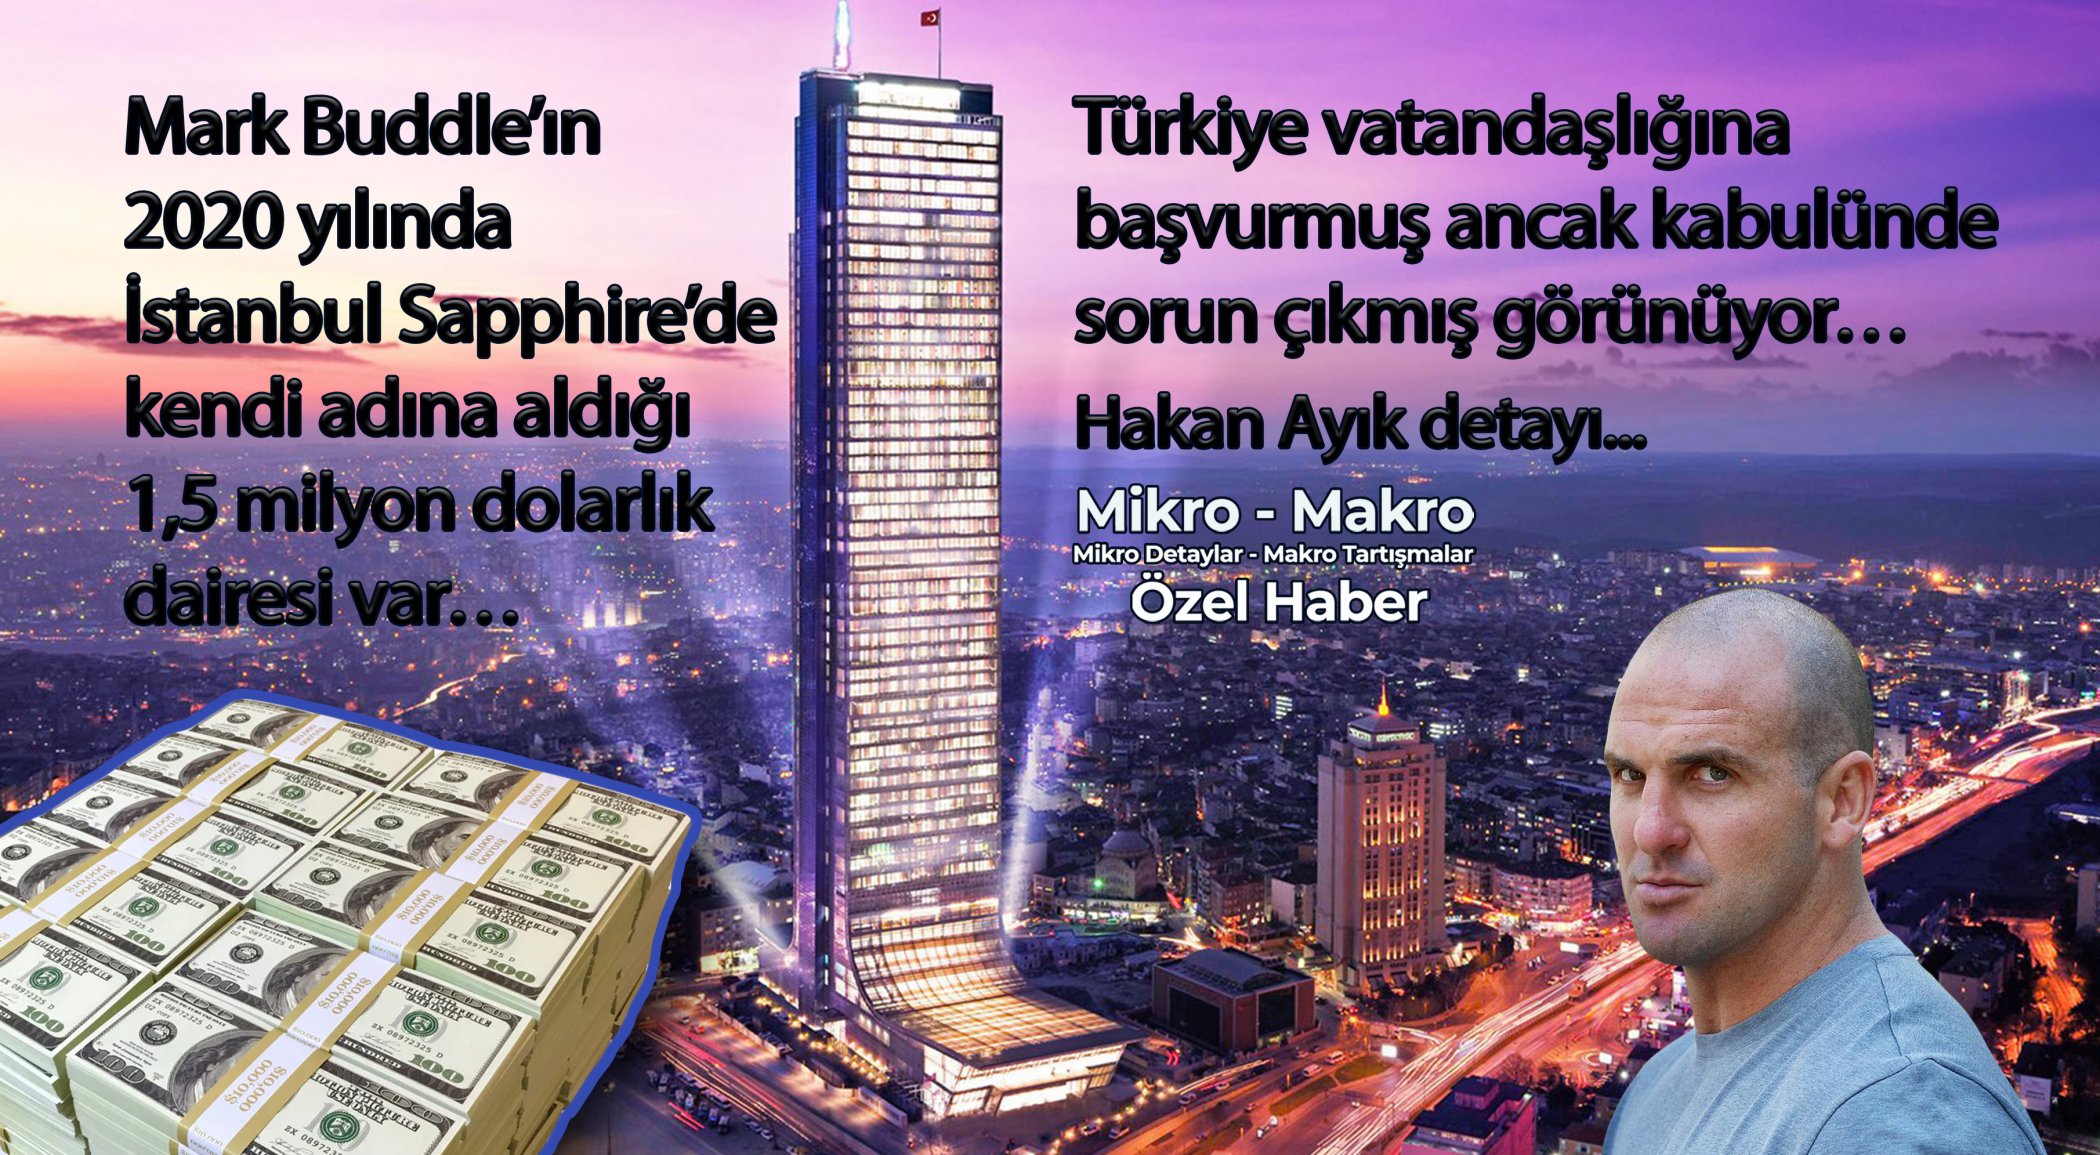 https://mikro-makro.net/mark-buddlein-2020-yilinda-istanbulda-kendi-ismine-tapusunu-aldigi-dairesi-var